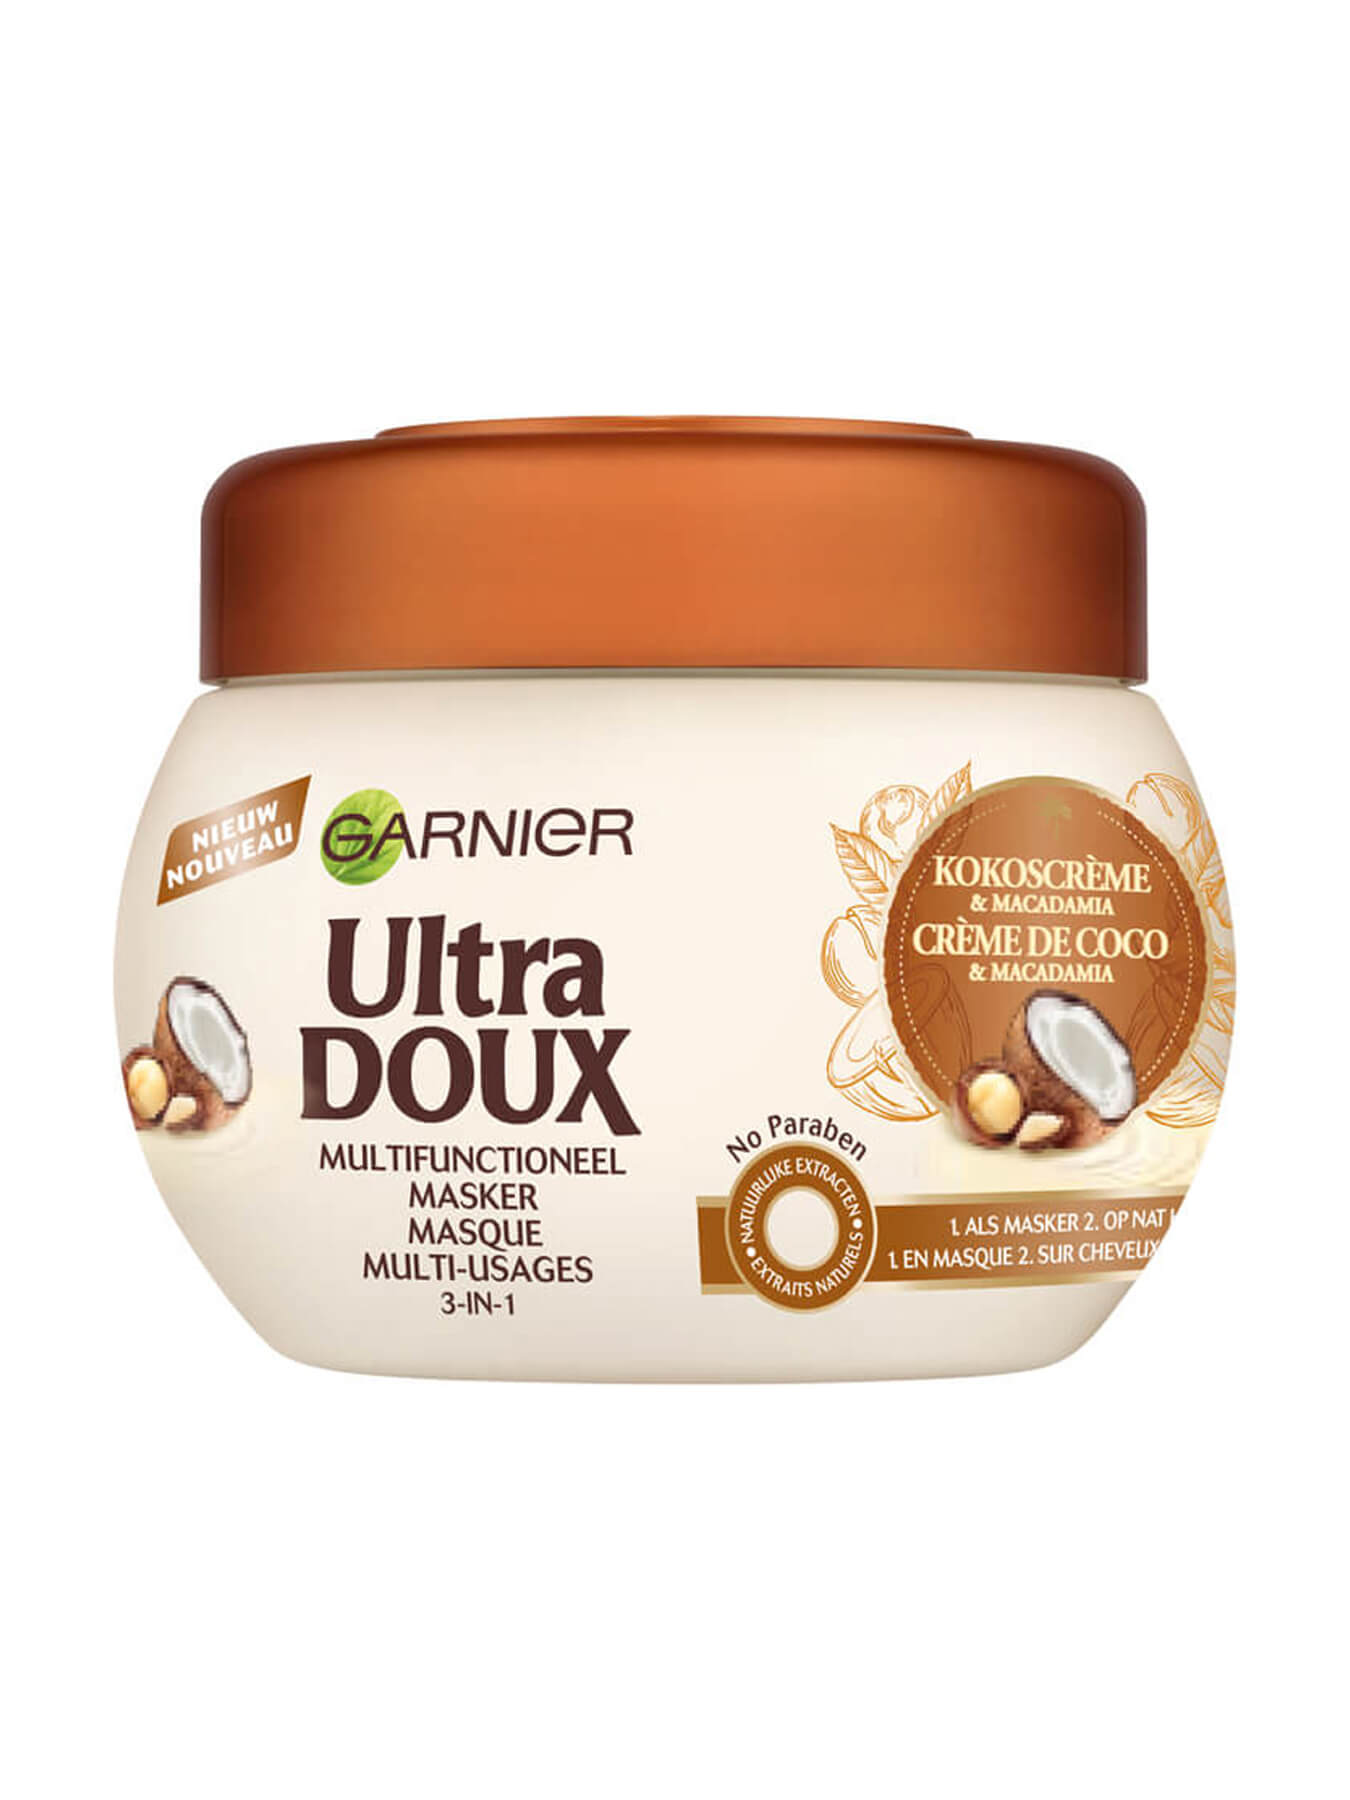 Ultra Doux Crème de coco & macadamia